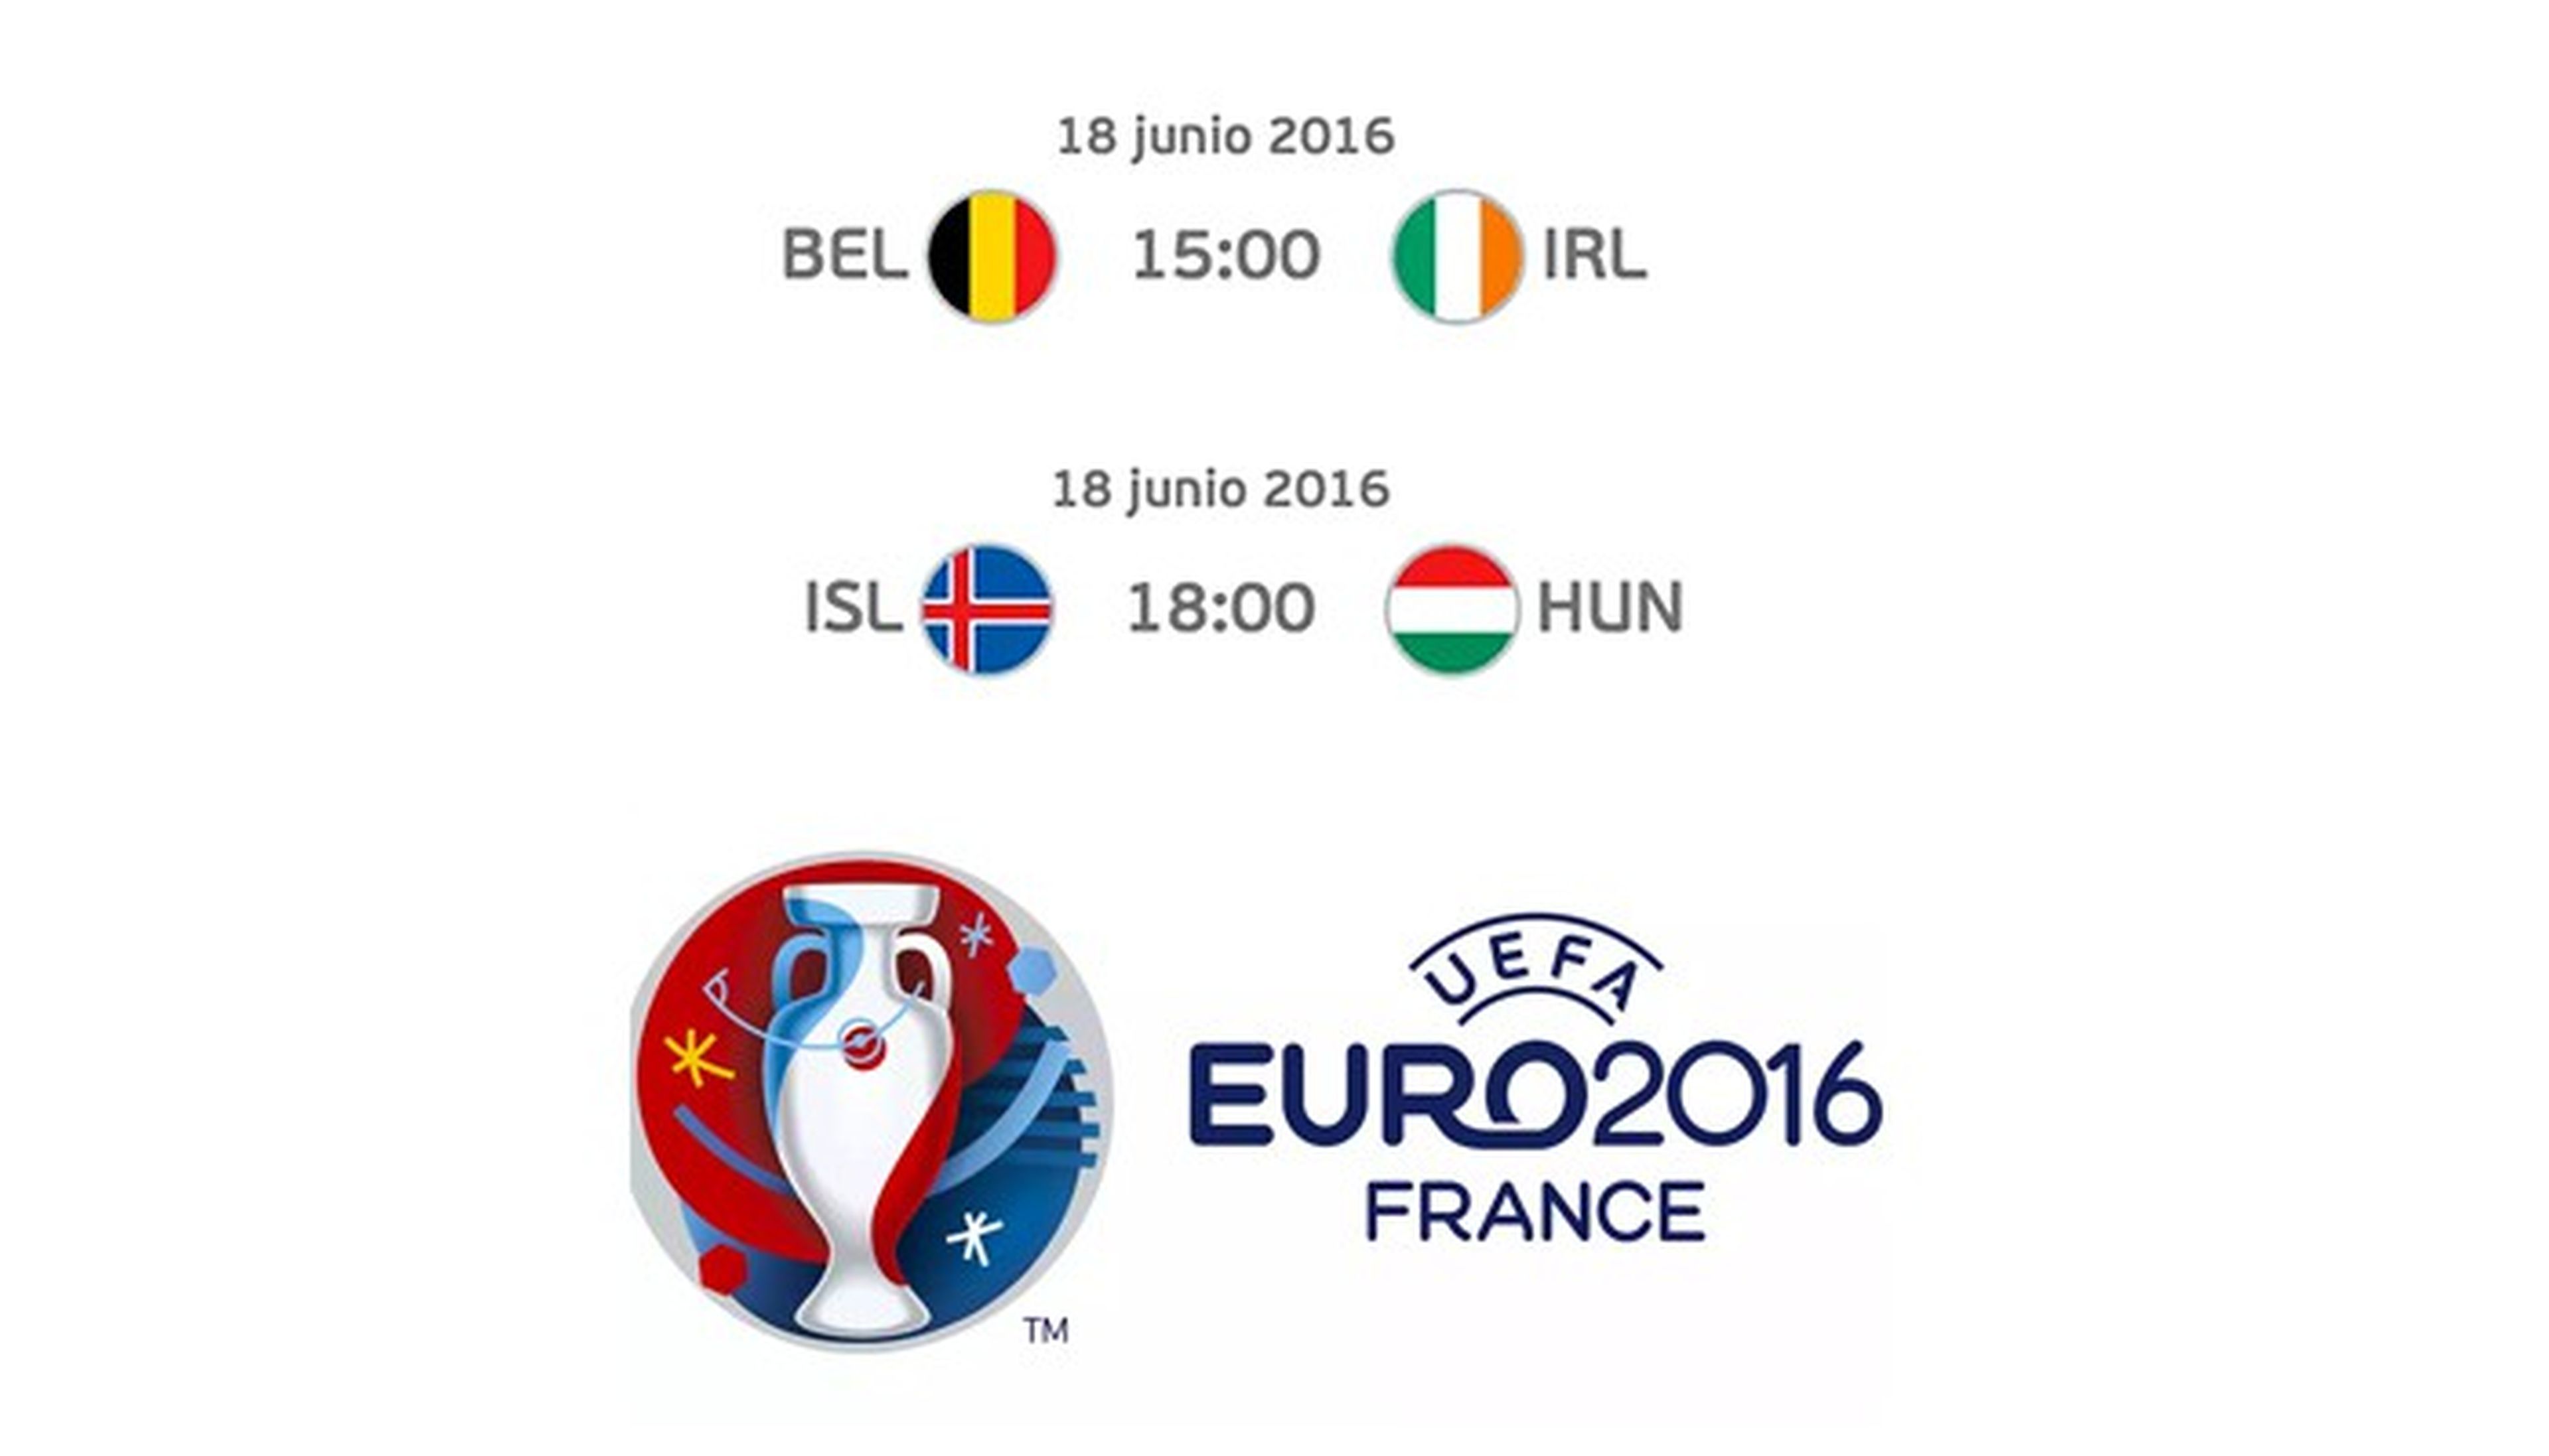 Bélgica-Irlanda e Islandia-Hungría, cómo ver online gratis los partidos de la Euro 2016 de hoy